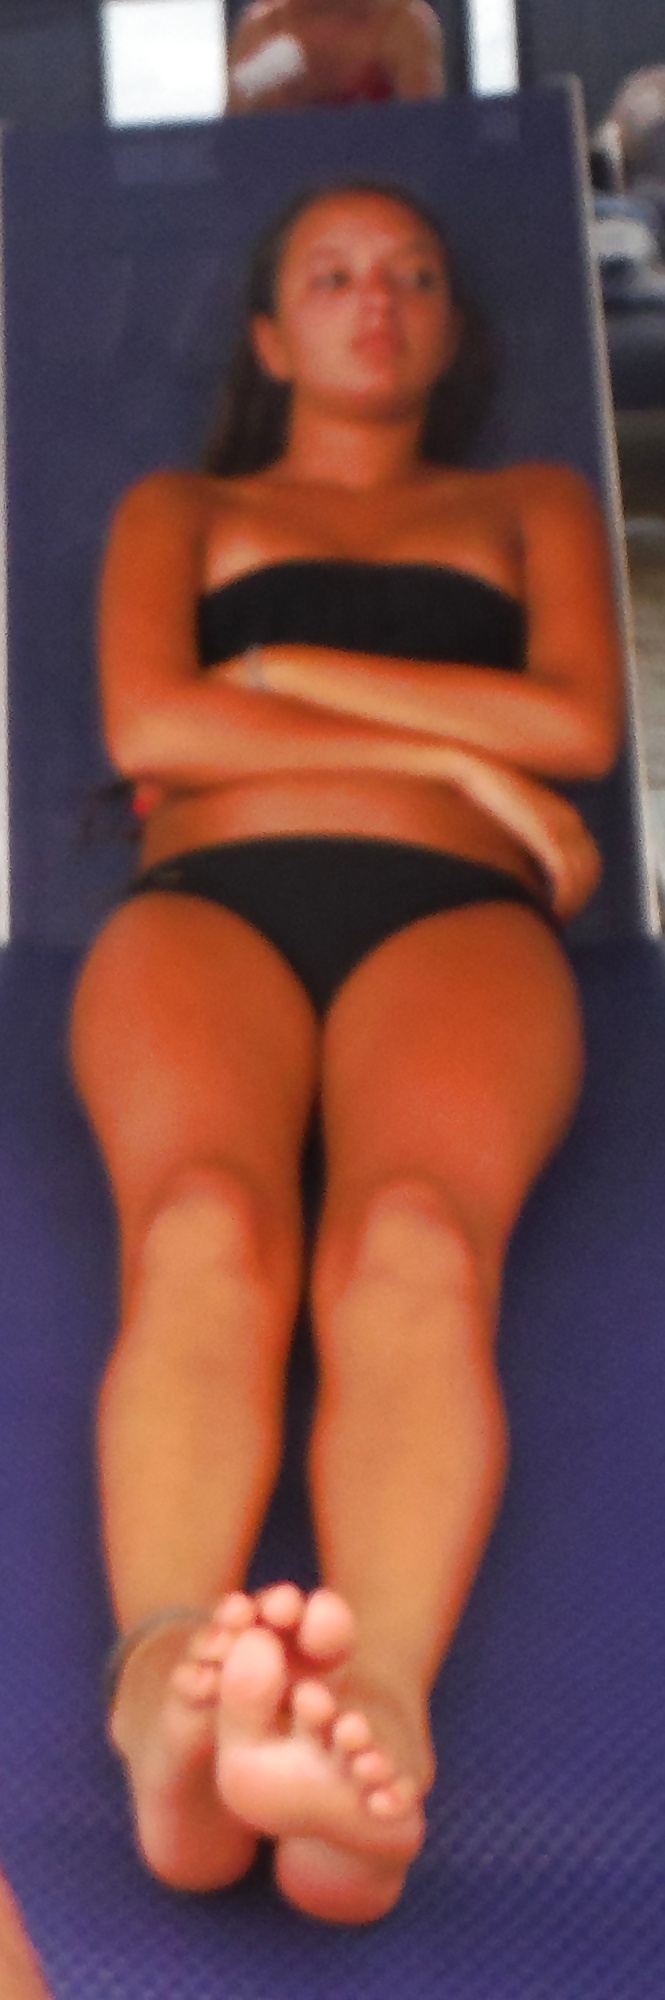 Cute Italian teen butt & ass at bikini pool  #29000604